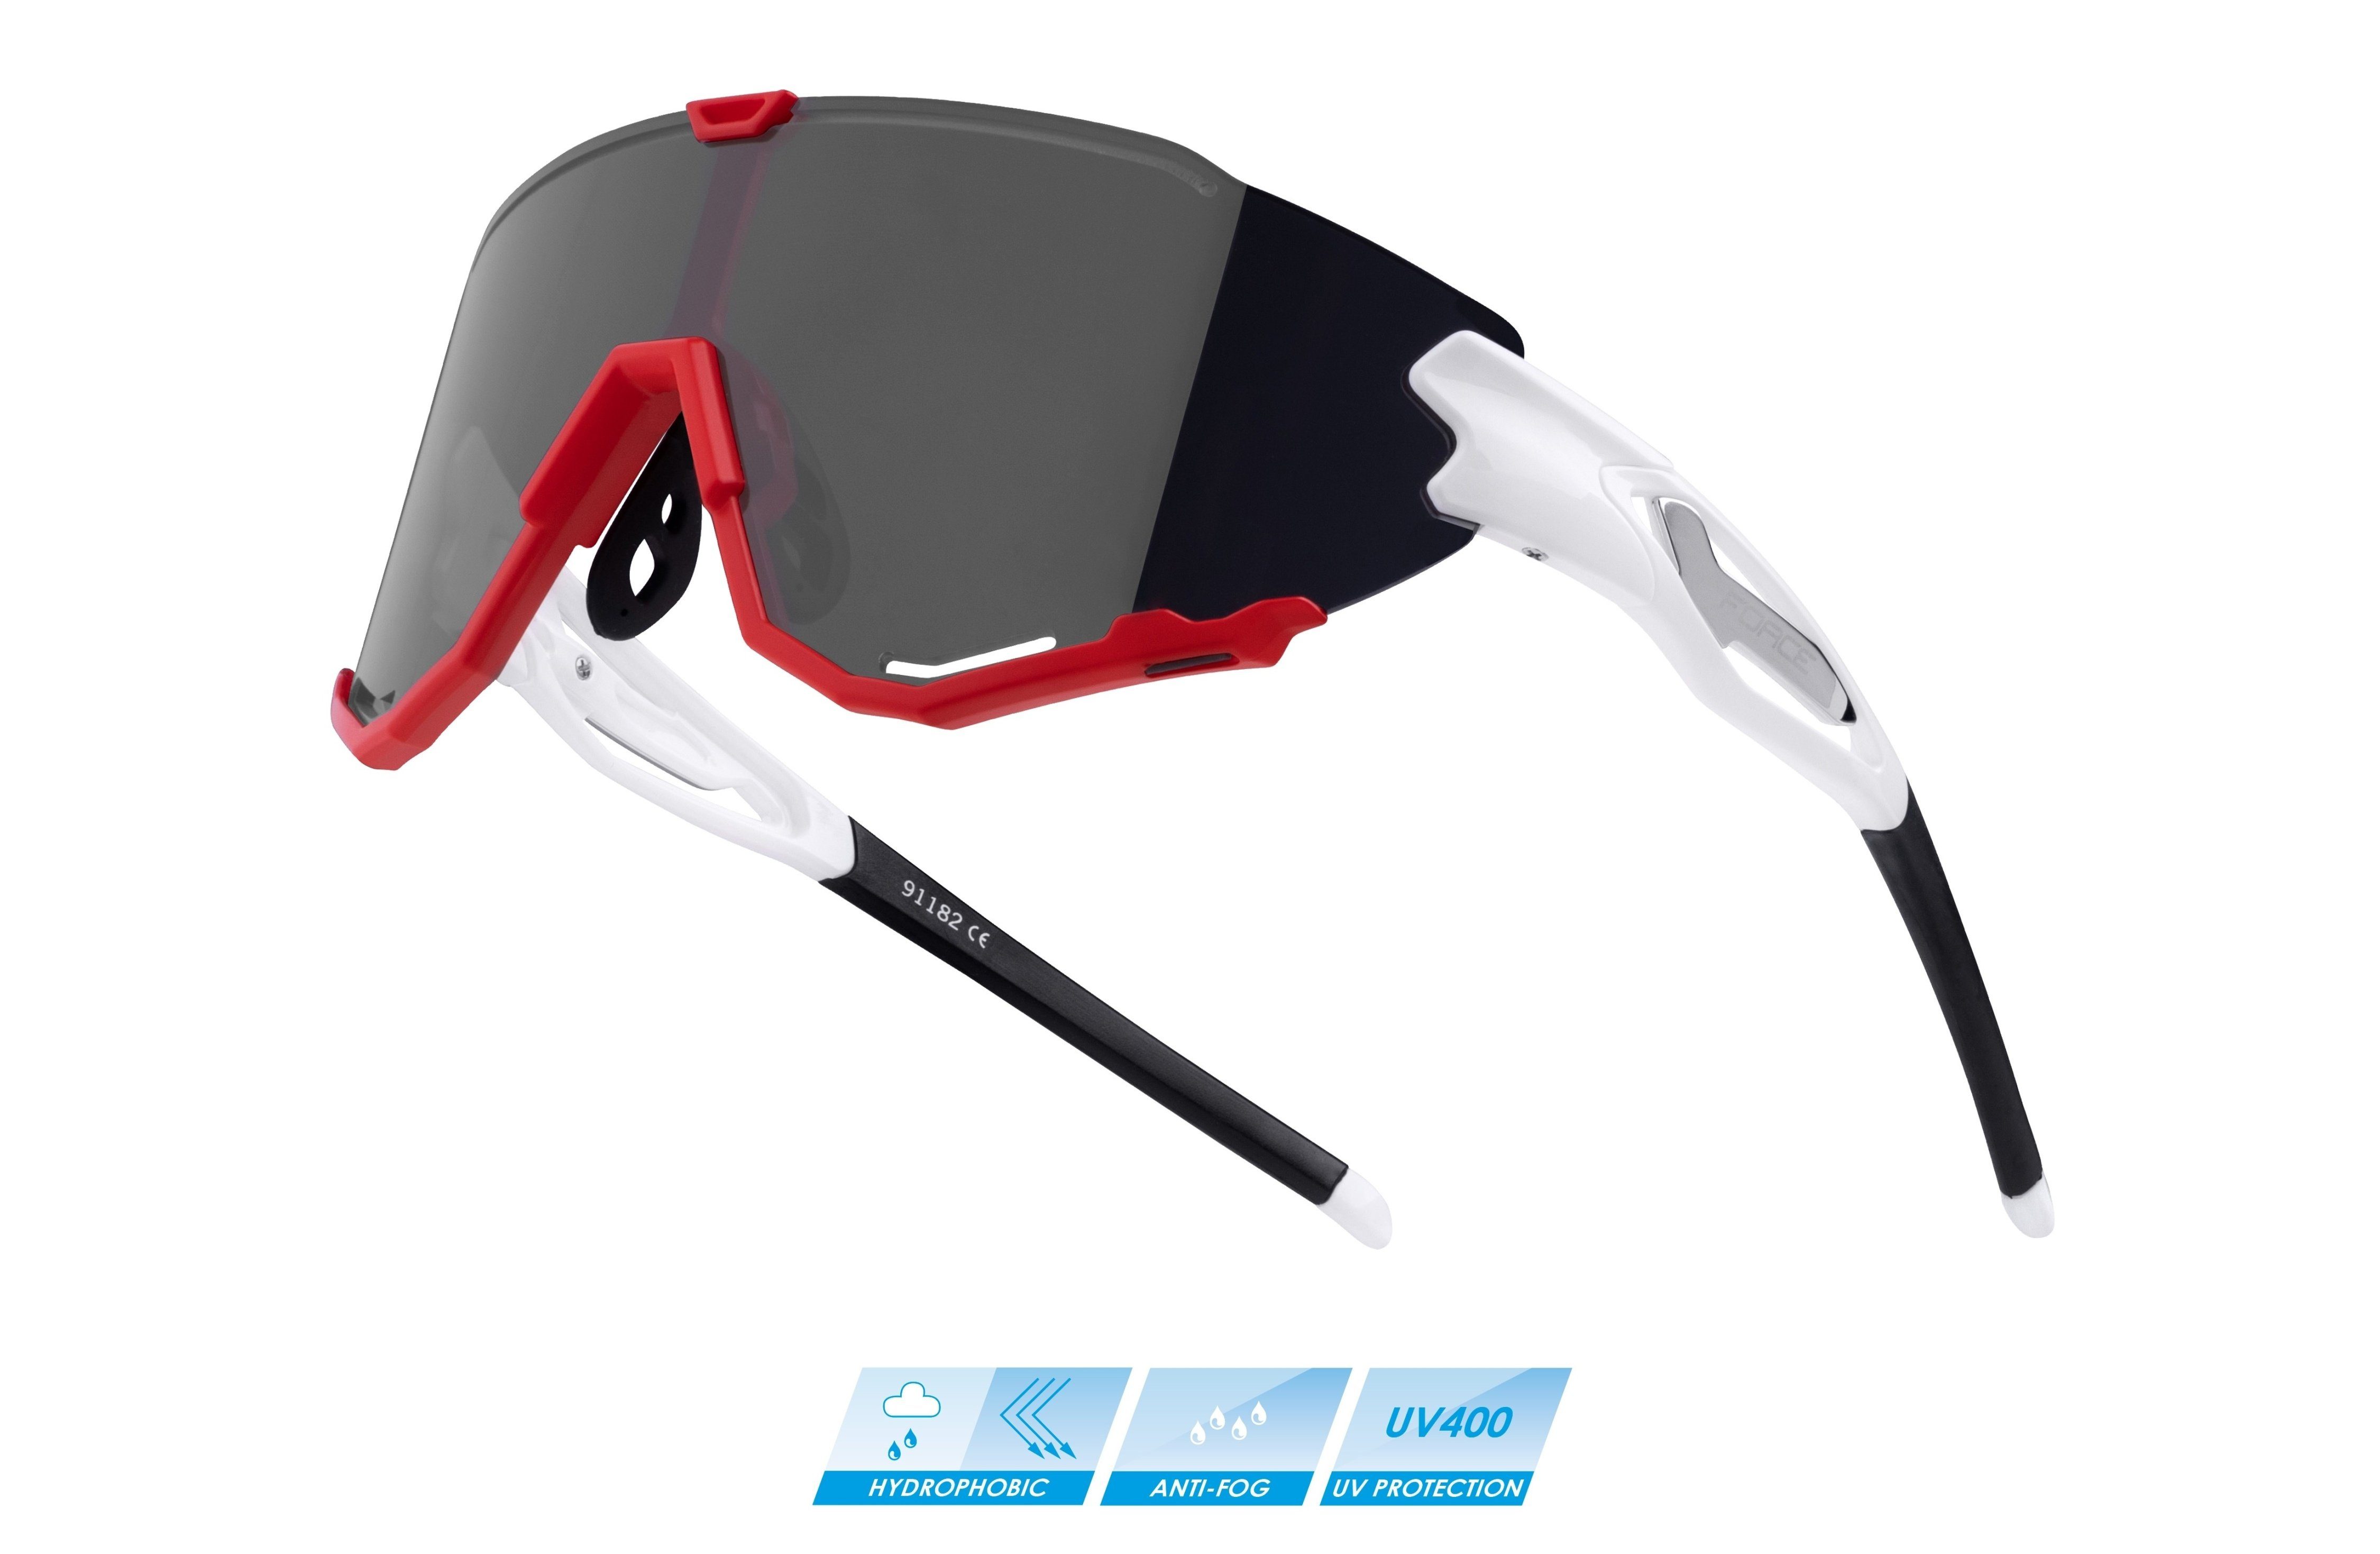 weiß-rot-schwarze Spiegellinse FORCE CREED Sonnenbrille Fahrradbrille FORCE